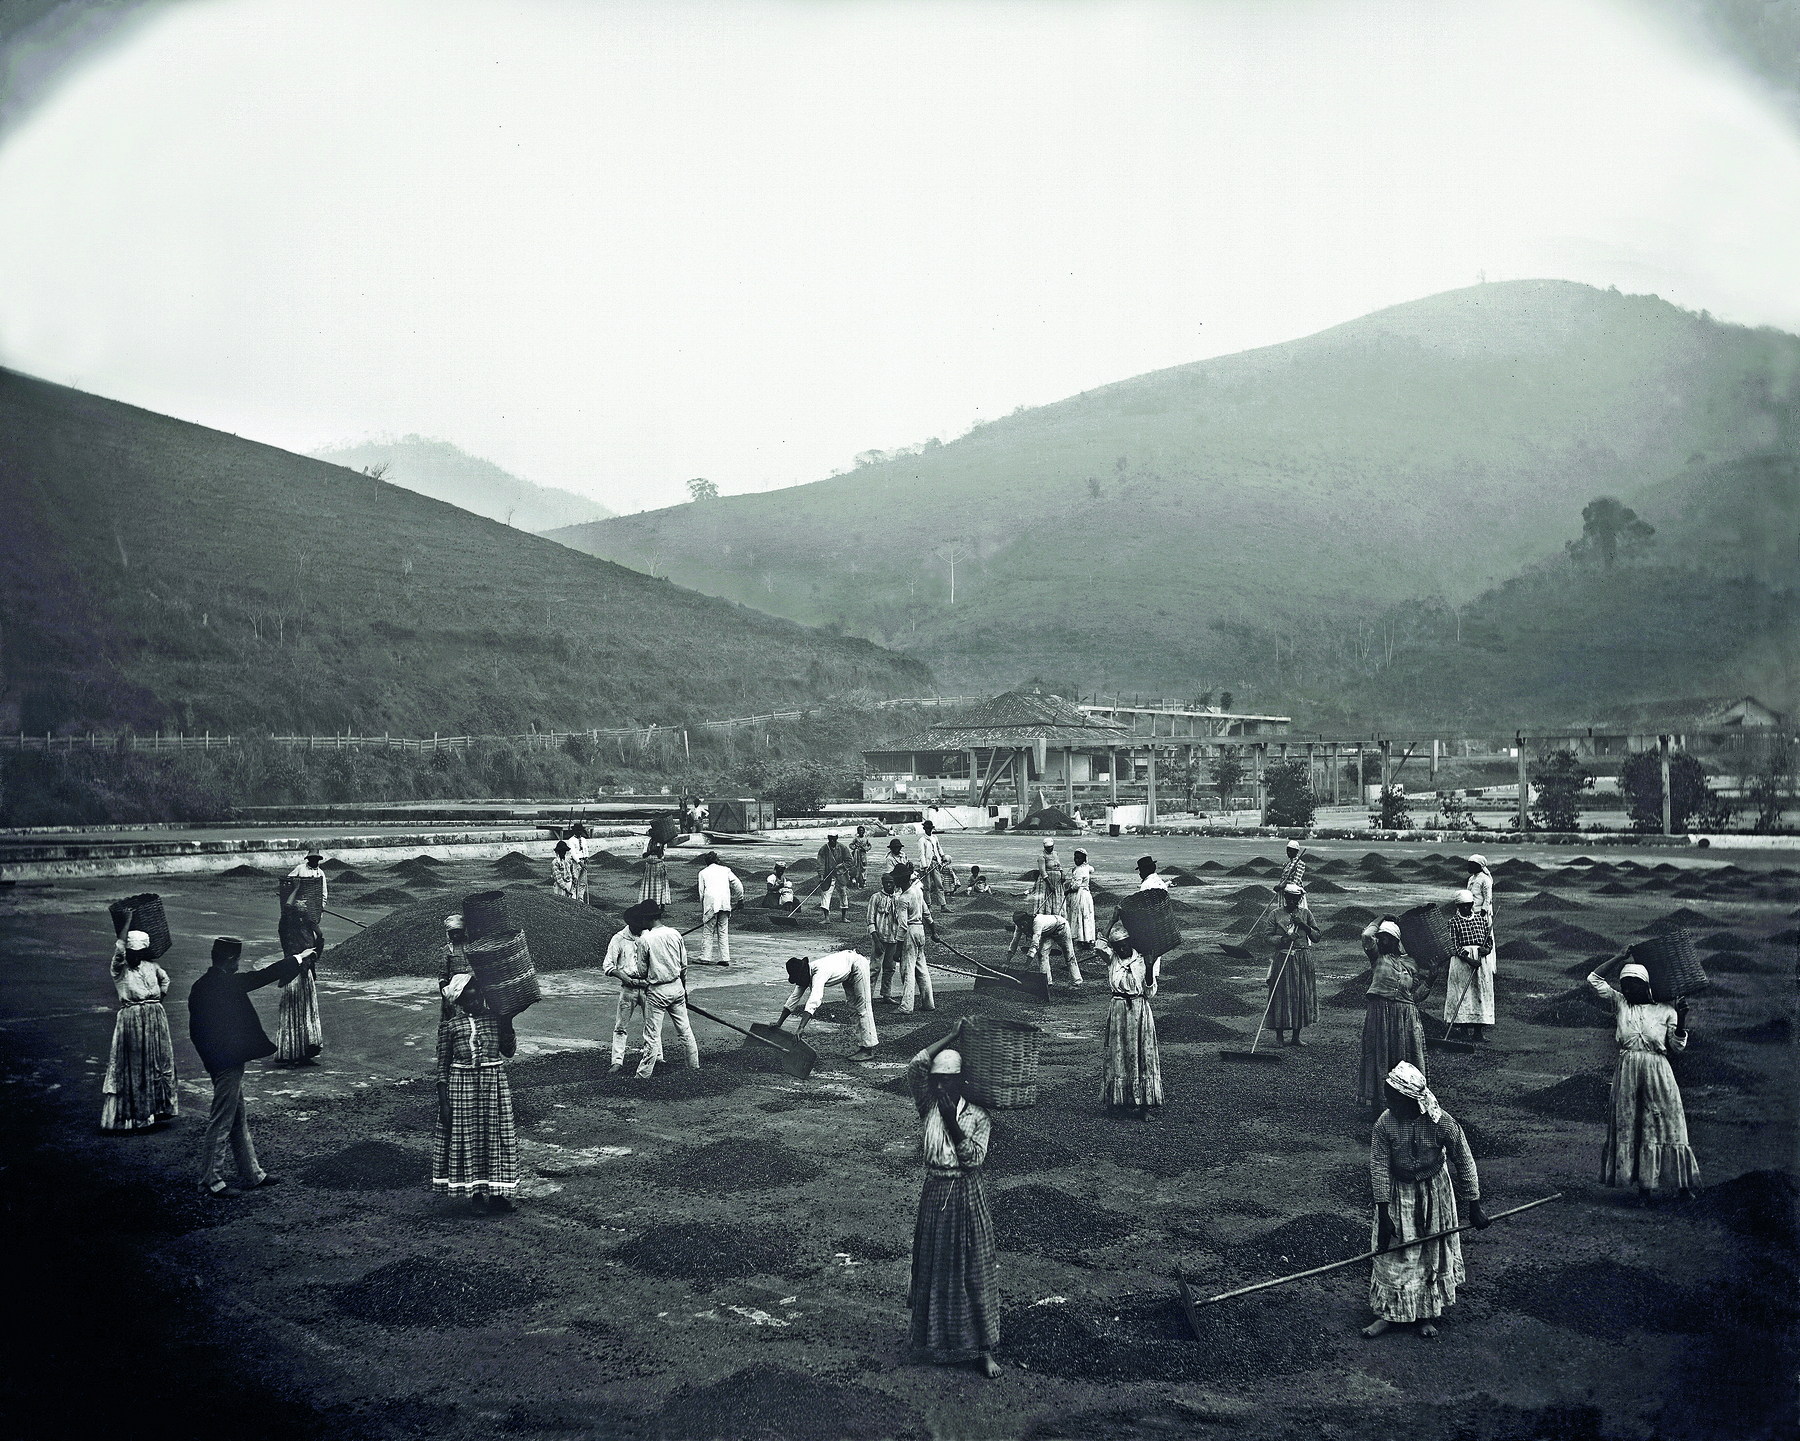 Fotografia em preto e branco. Sobre um grande campo, plano e terroso, diversas pessoas distribuídas, algumas portando enxadas. Em segundo plano, cadeias de montanhas pelo horizonte.